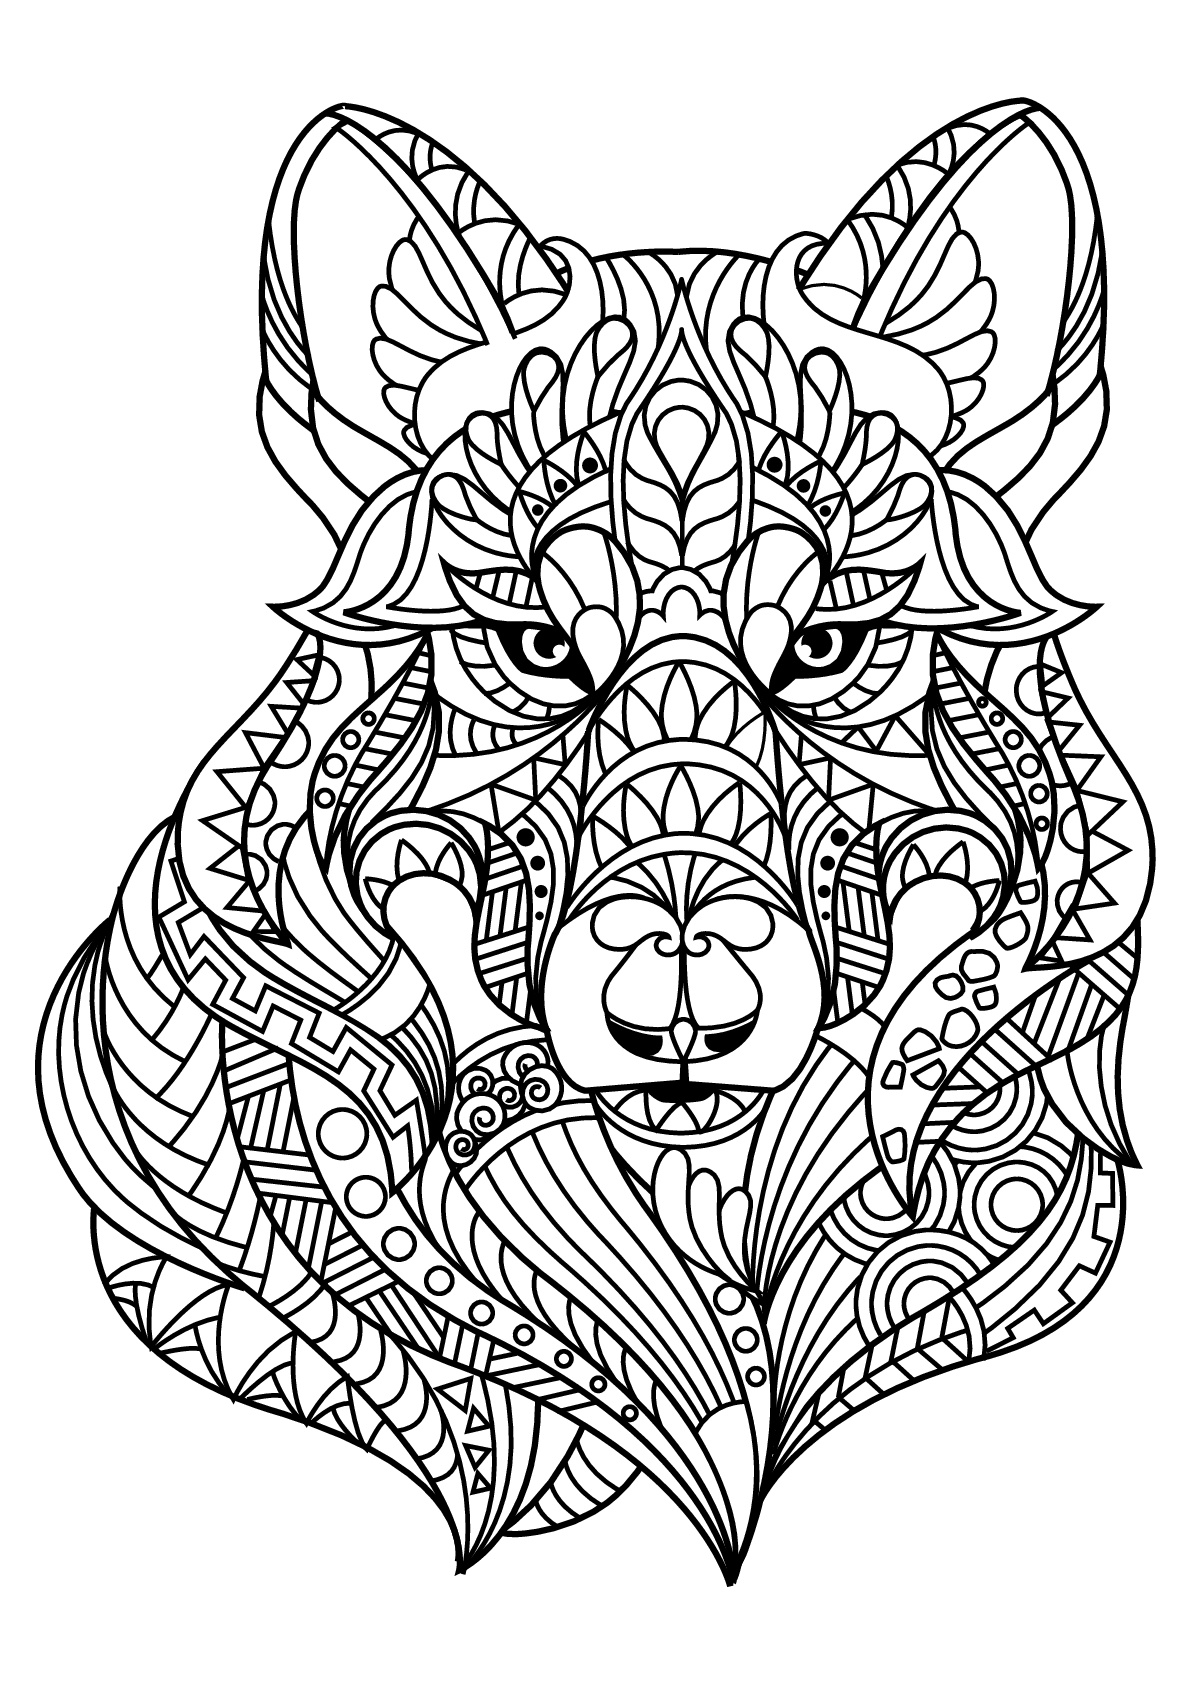 Cabeça de Lobo, com padrões harmoniosos e complexos